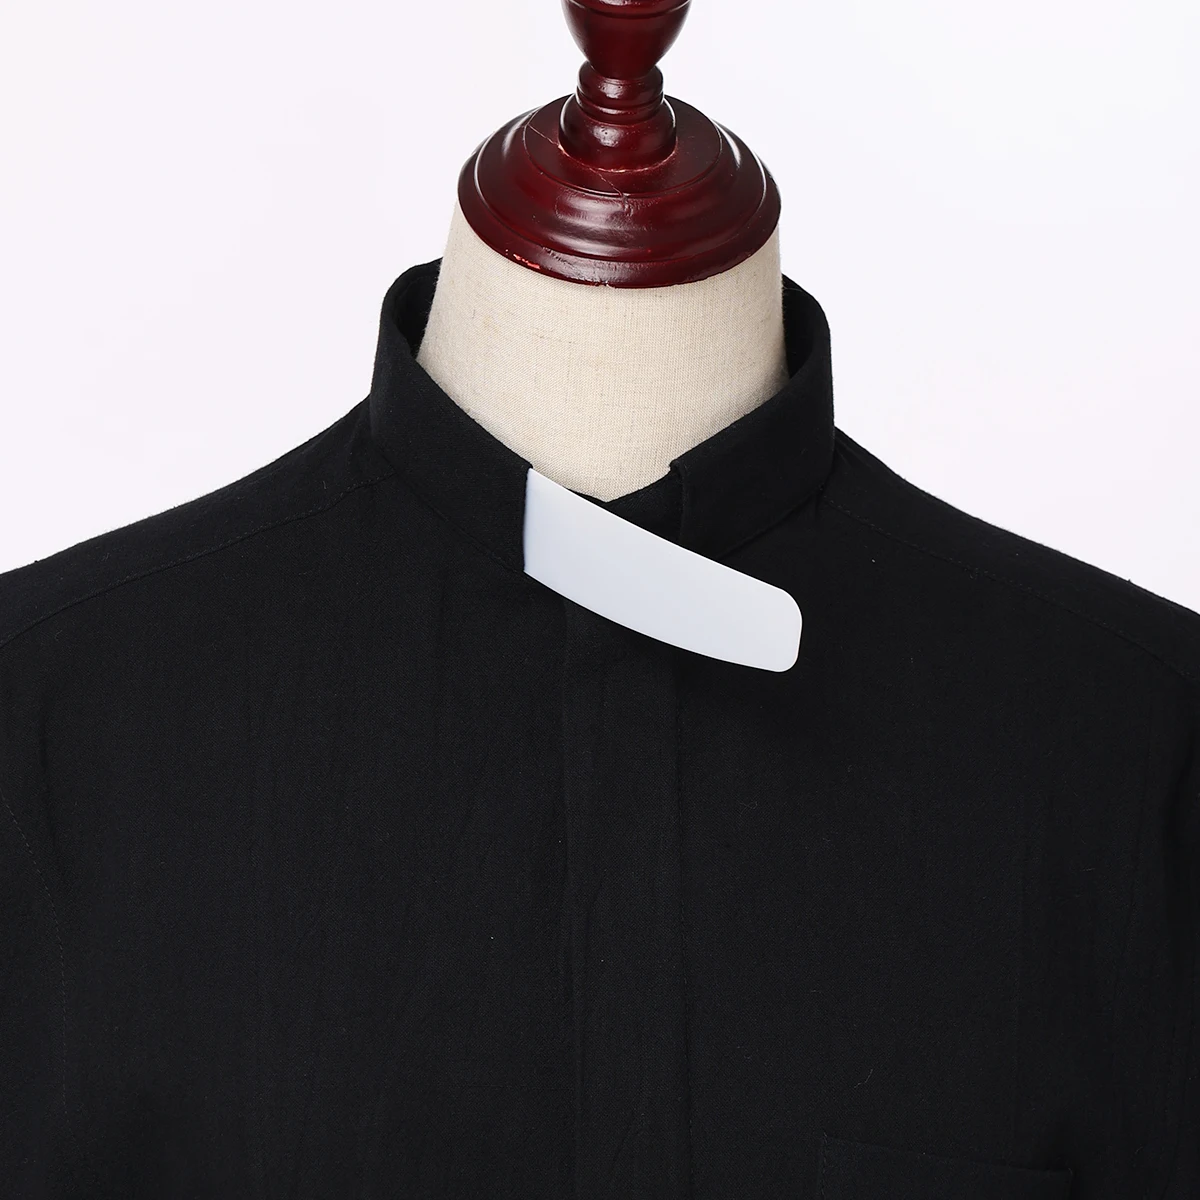 Katholischen Weiß Bürotestwert Kragen Ersatz Tab Tab Kragen für Klerus Shirt Zubehör